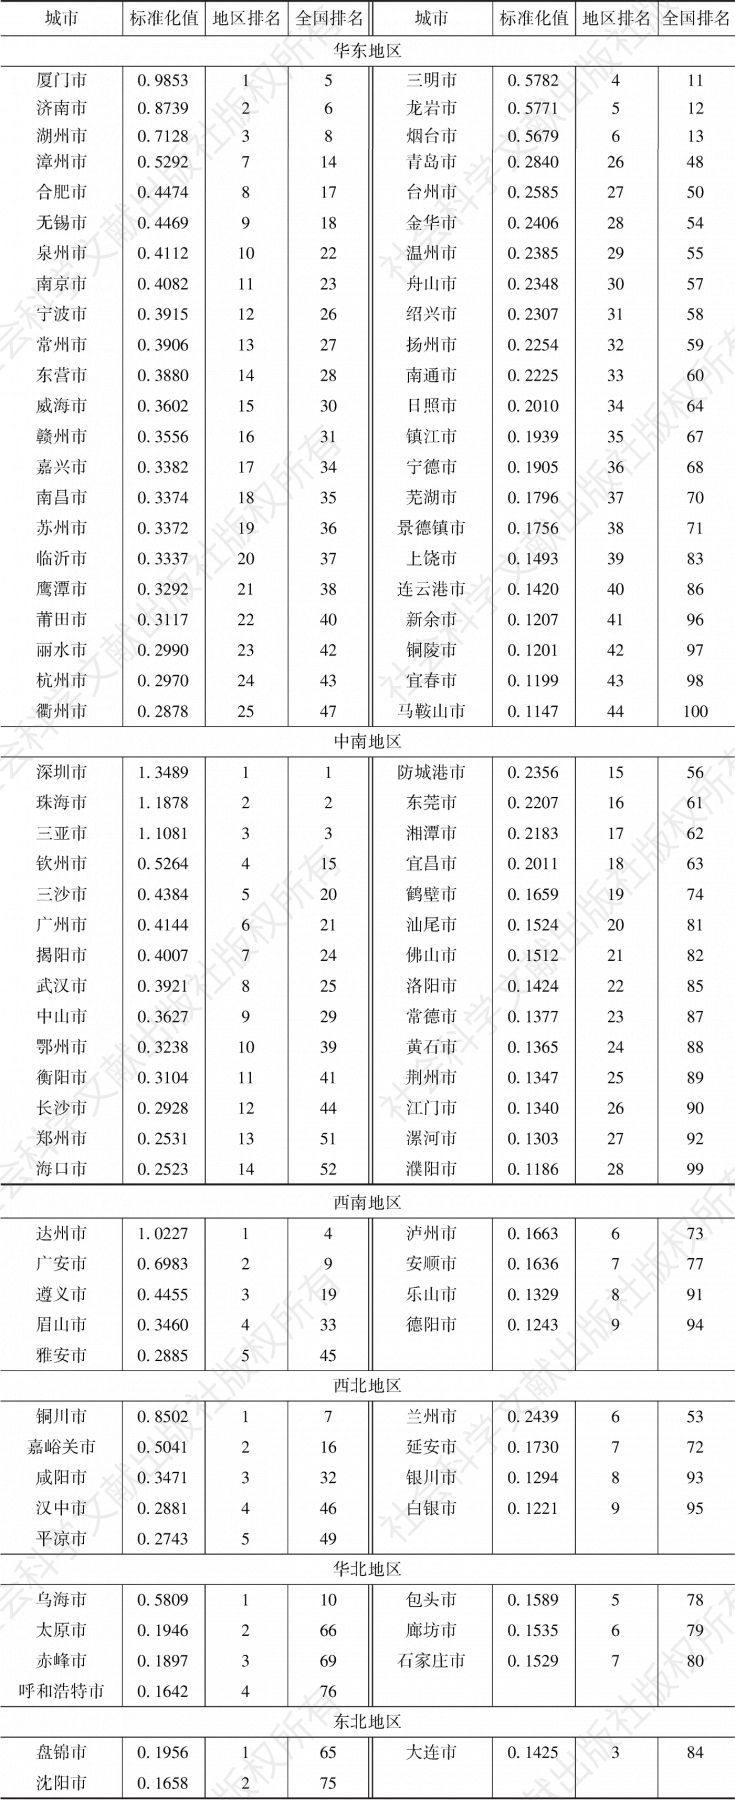 表4-1 2019年中国地方政府效率“百高市”的标准化值及排名